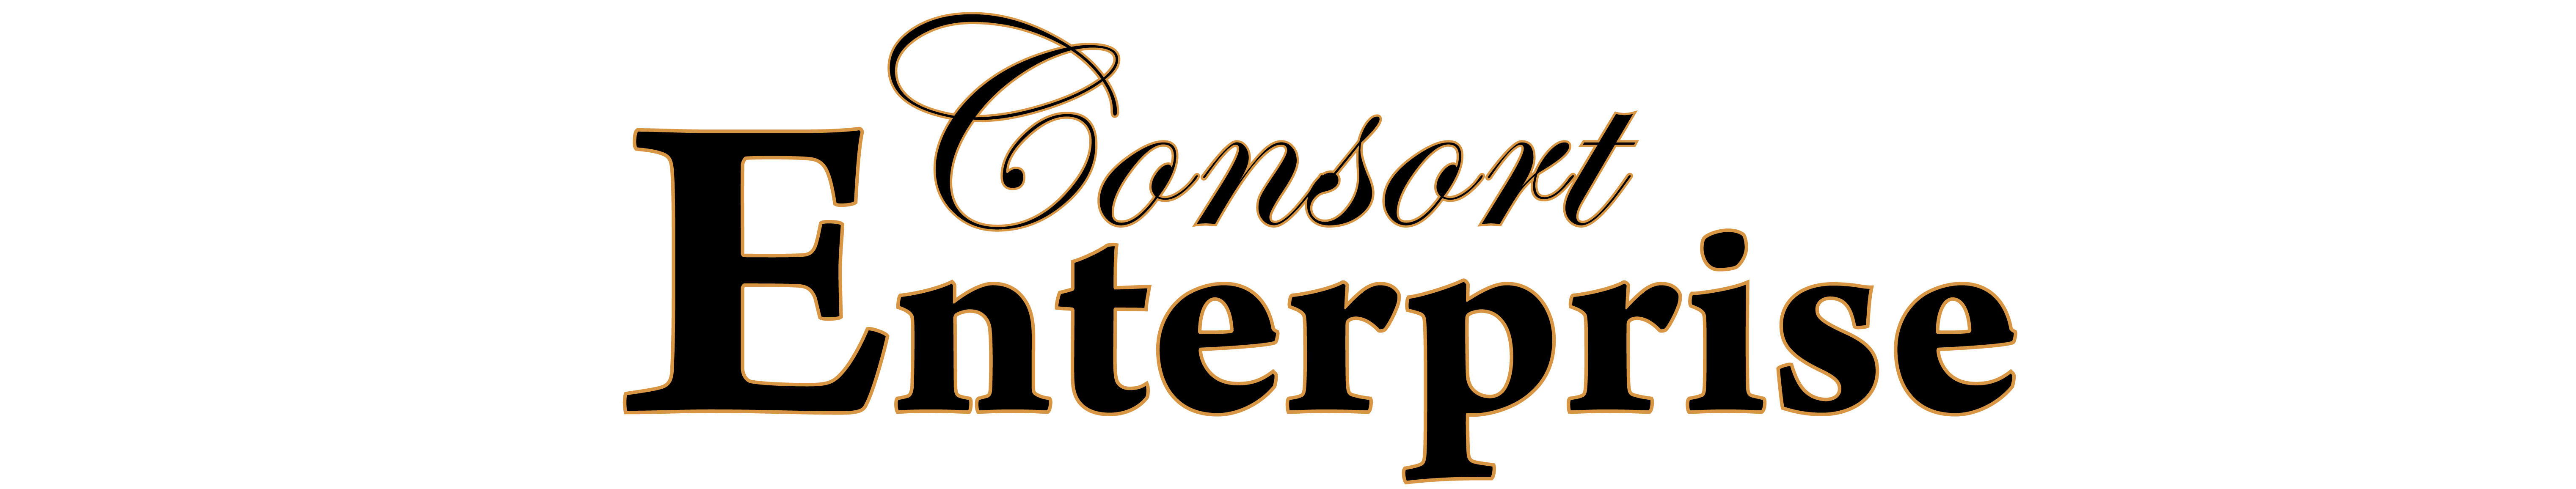 Consort Enterprise